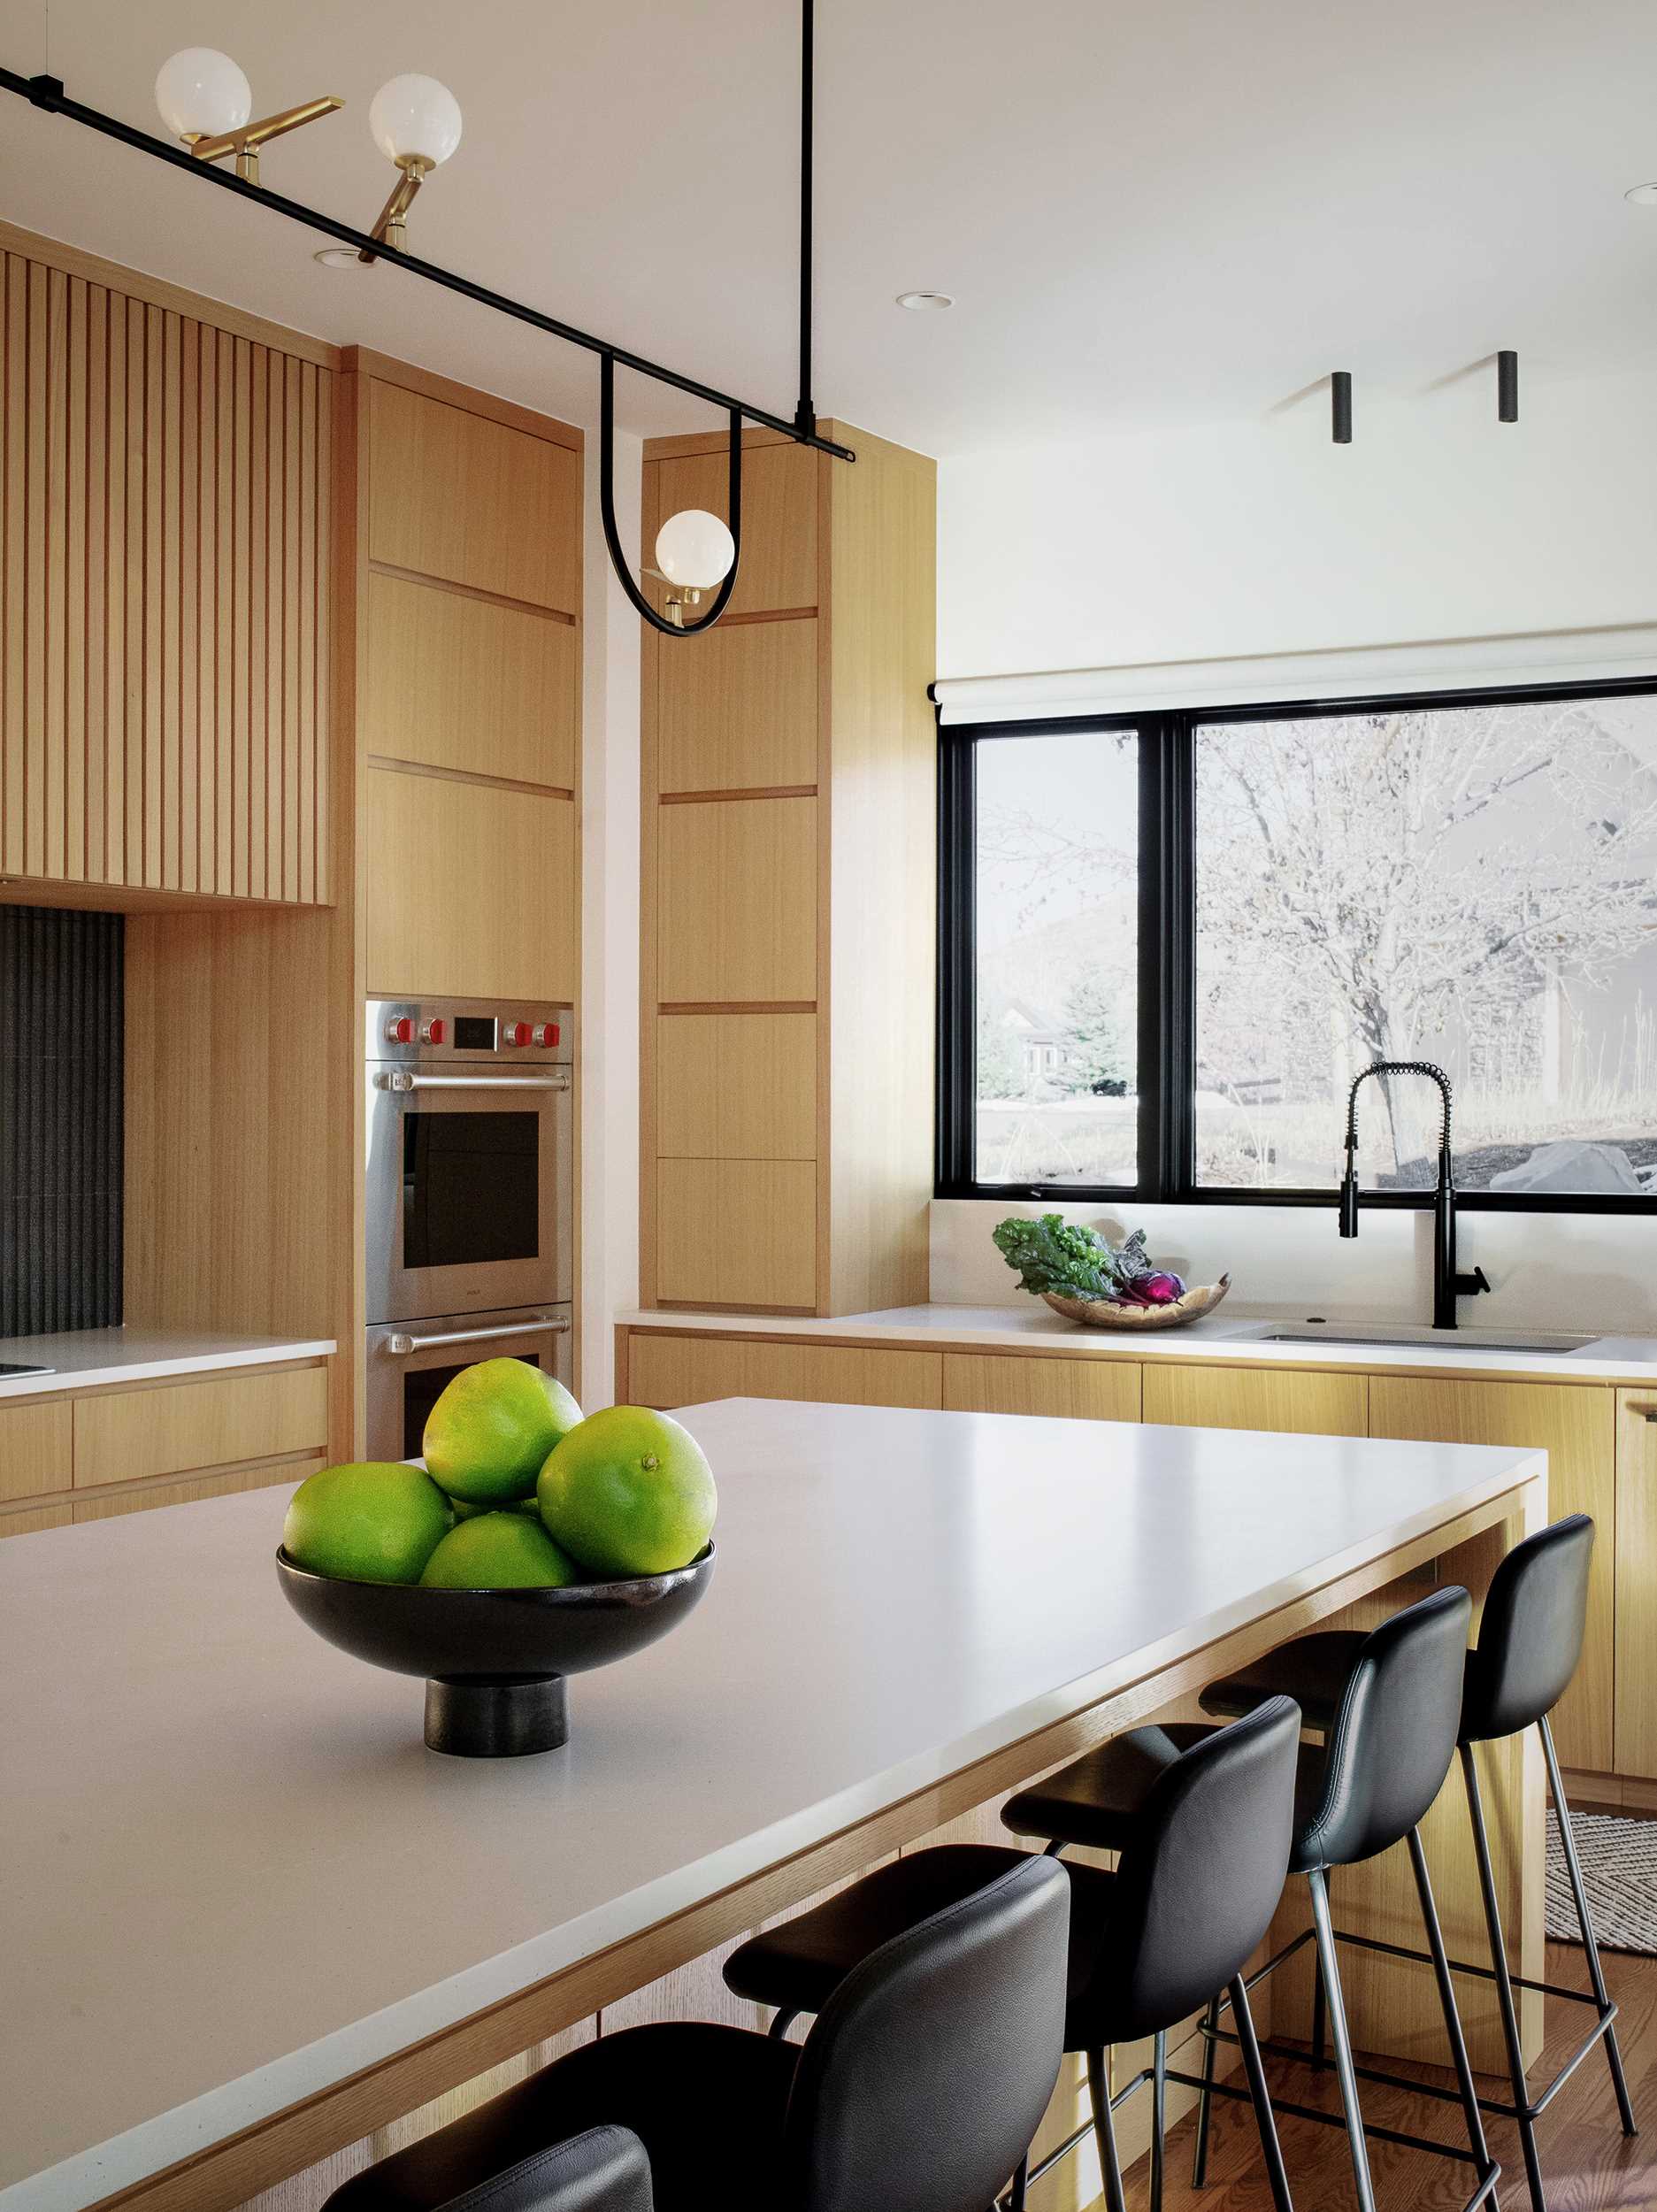 یک آشپزخانه مدرن با یک جزیره شامل کابینت‌های روکش بلوط سفید اره‌شده و میزهای کوارتز با پوشش بتنی است. 